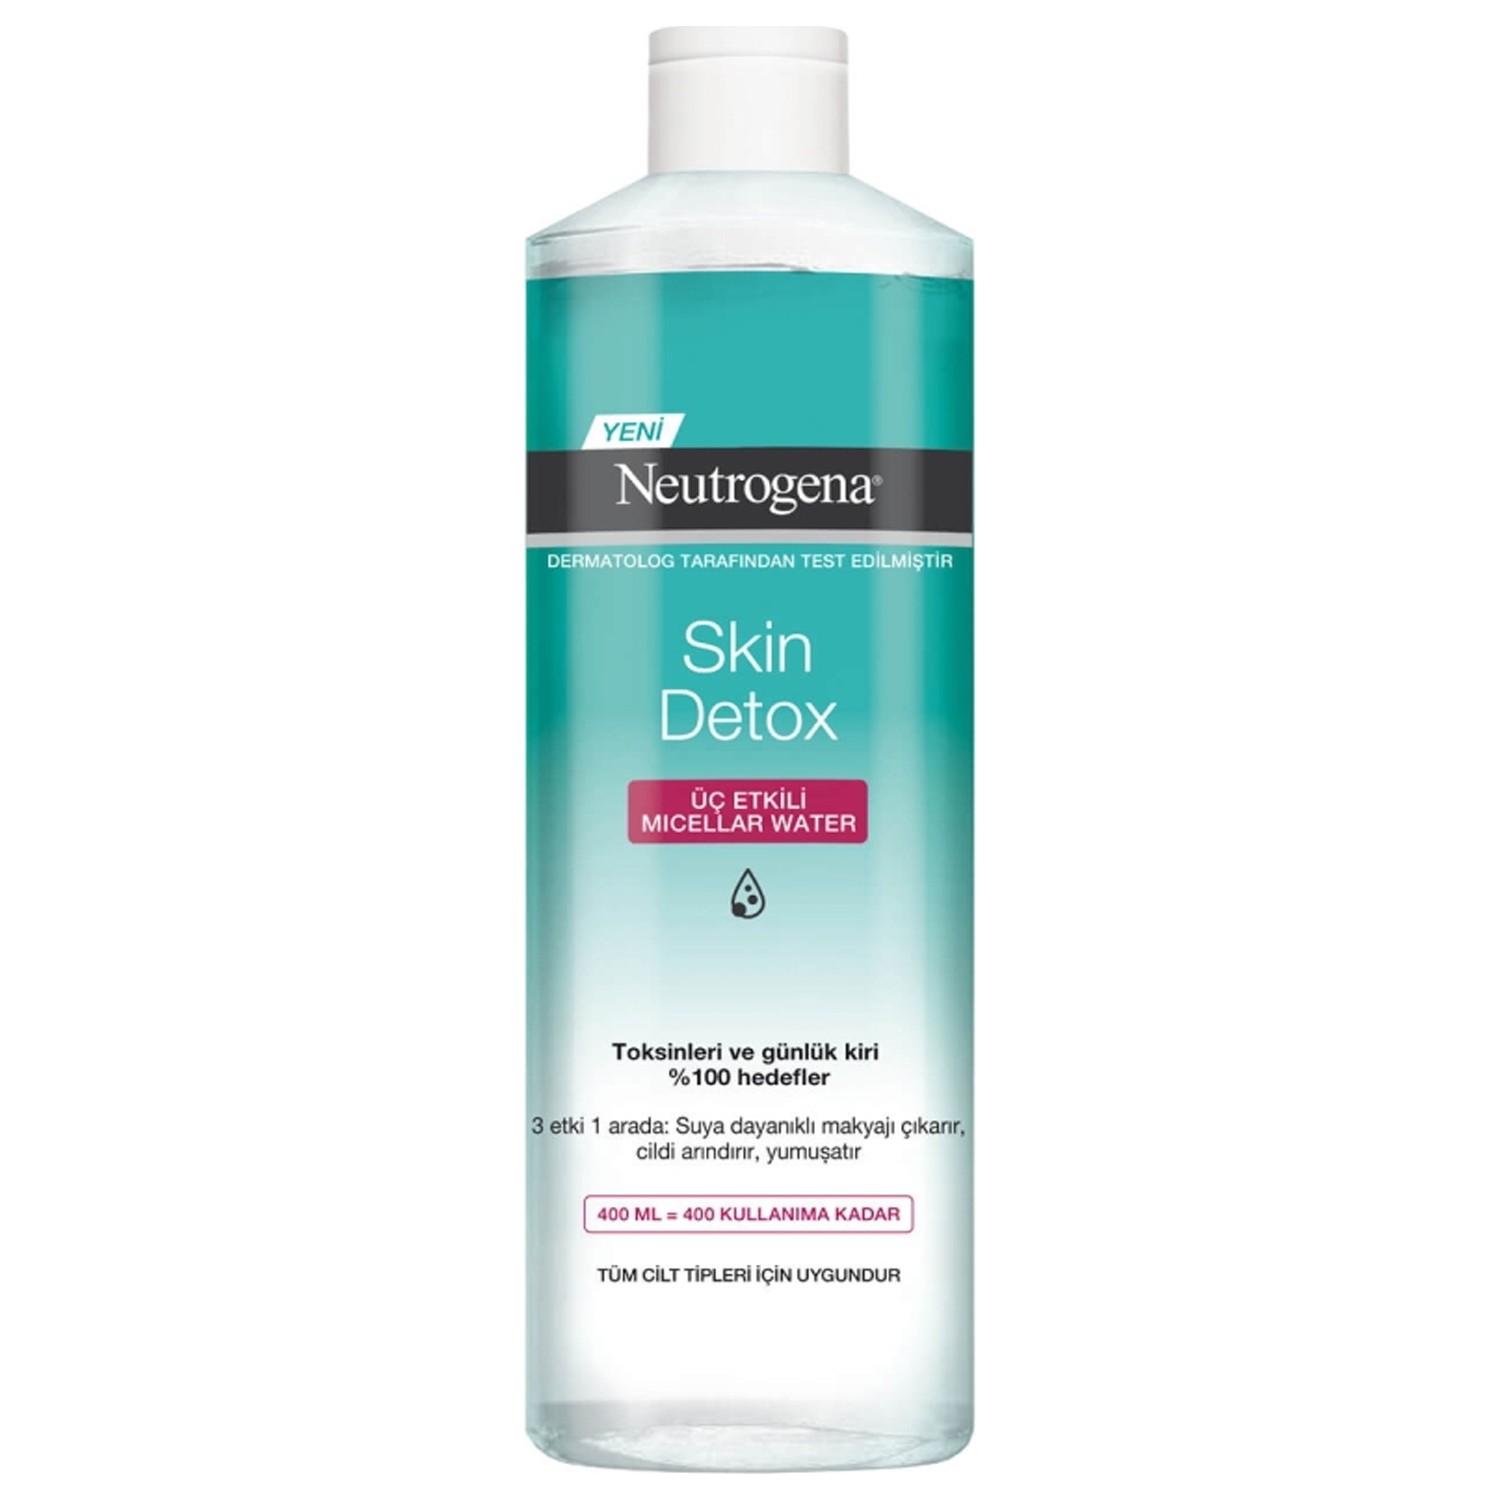 цена Мицеллярная вода Neutrogena Skin Detox Tip для снятия макияжа, 400 мл